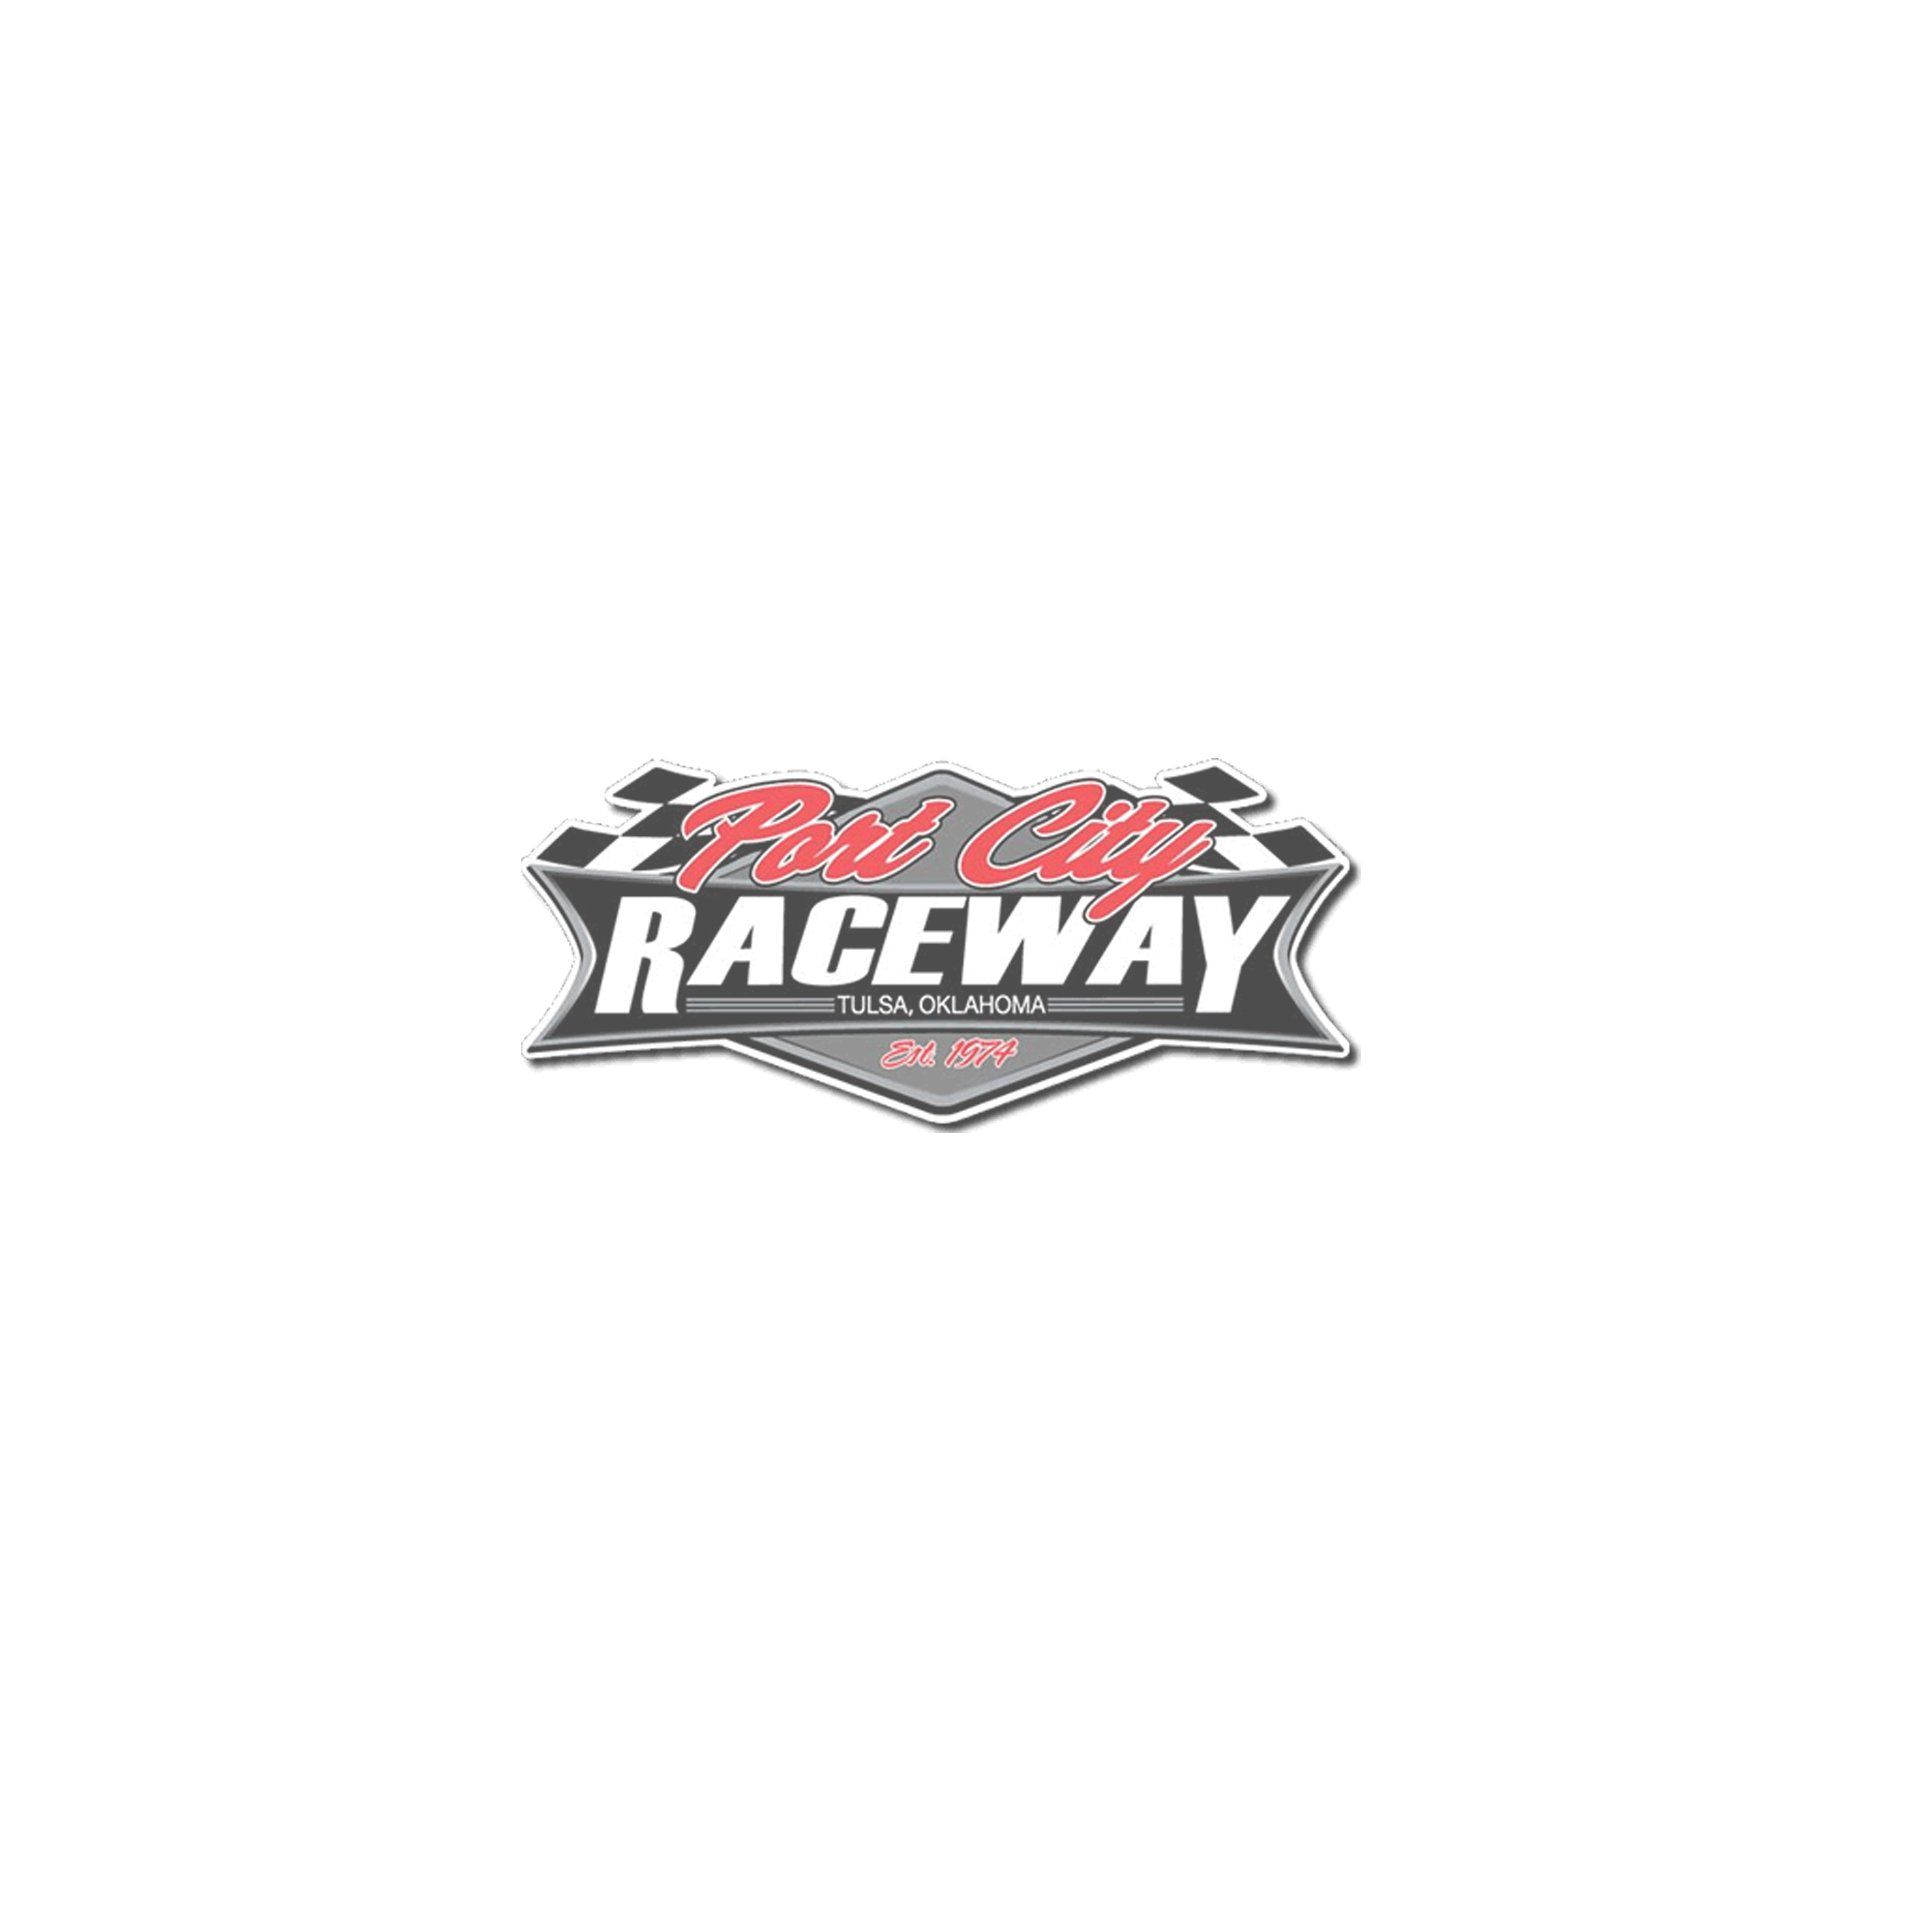 A raceway logo on a white background.